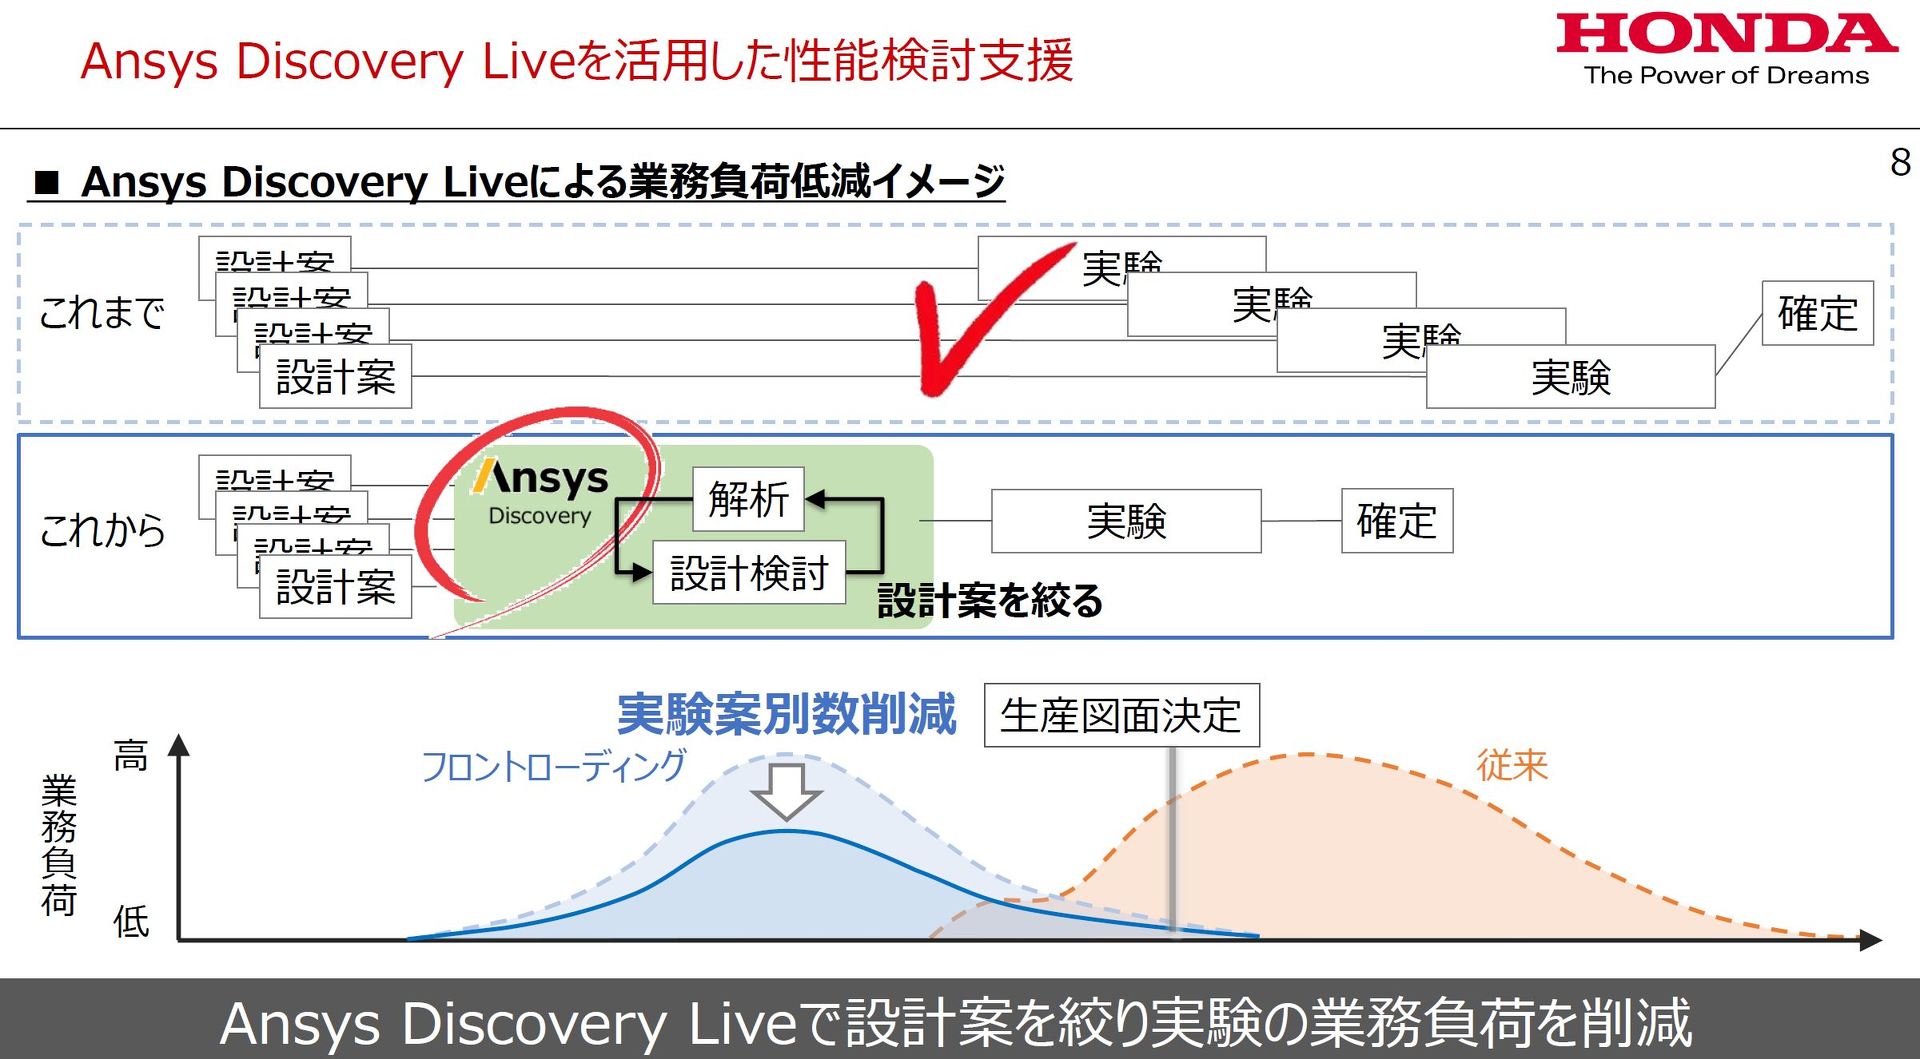 uAnsys Discovery Livevp\xɂ oTFz_ mNbNŊgn